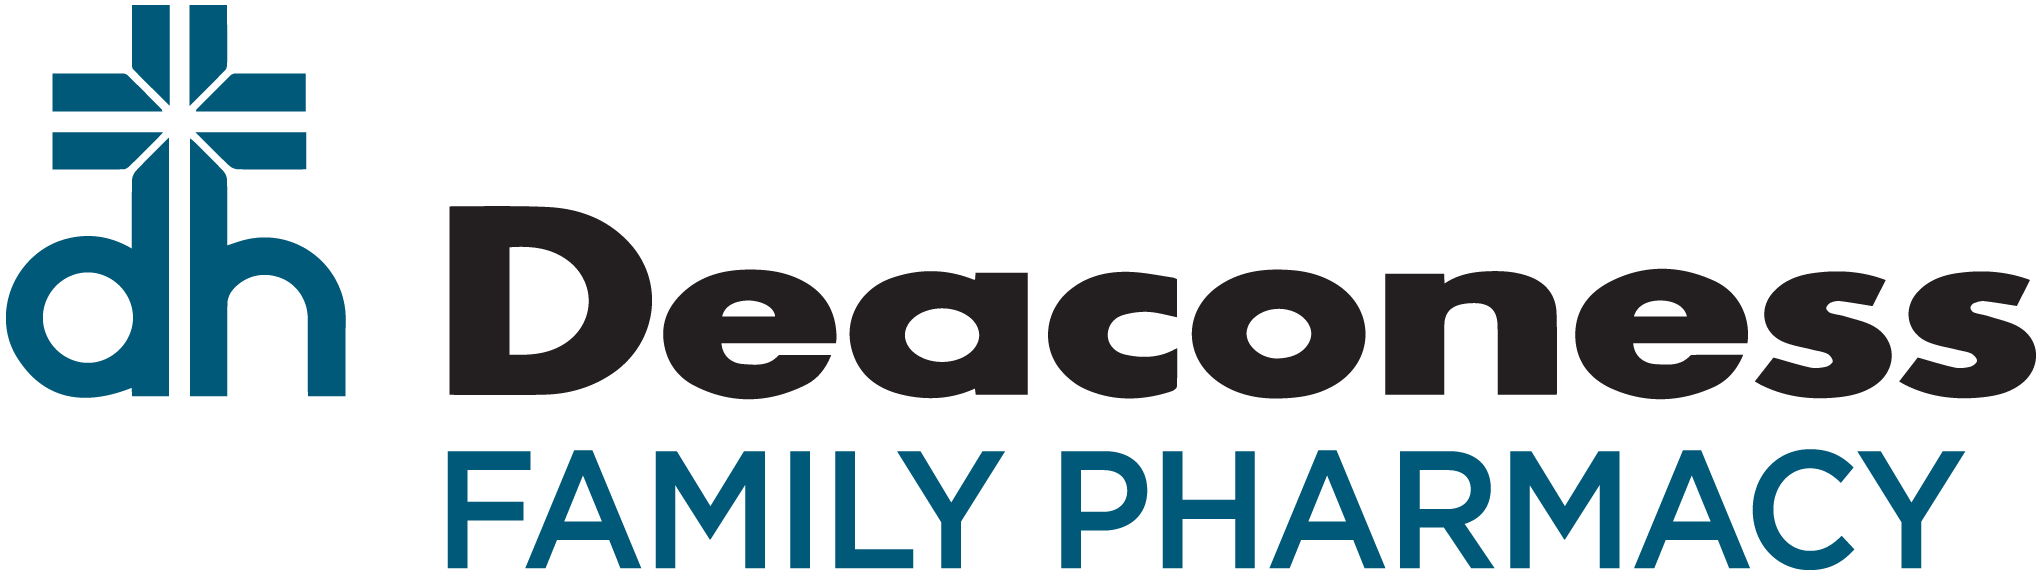 Deaconess Family Pharmacy